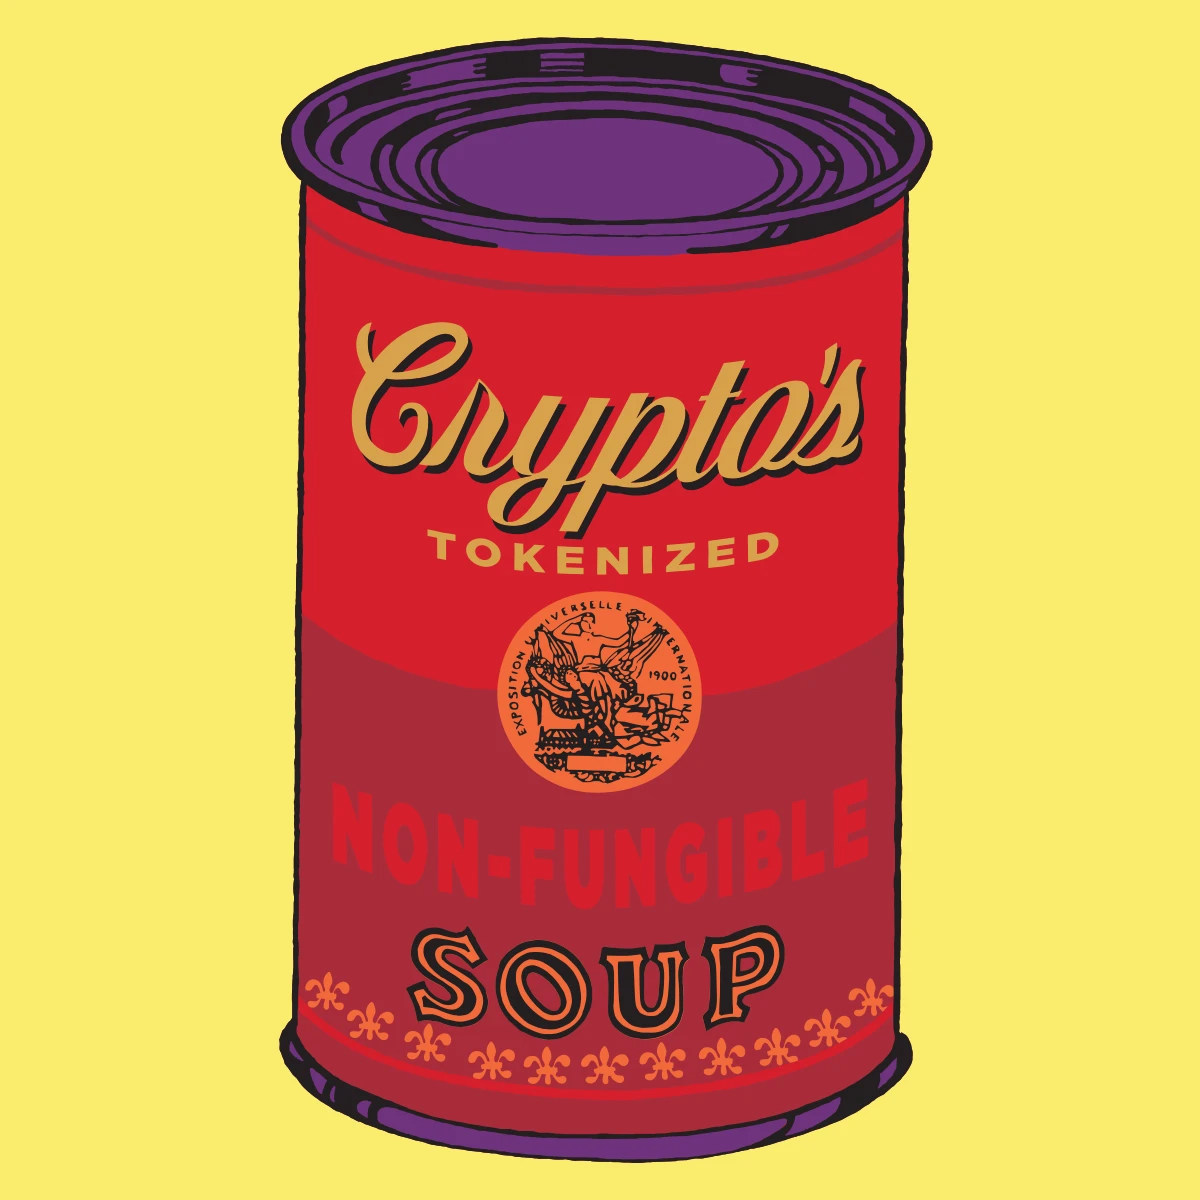 Non-Fungible Soup #1968